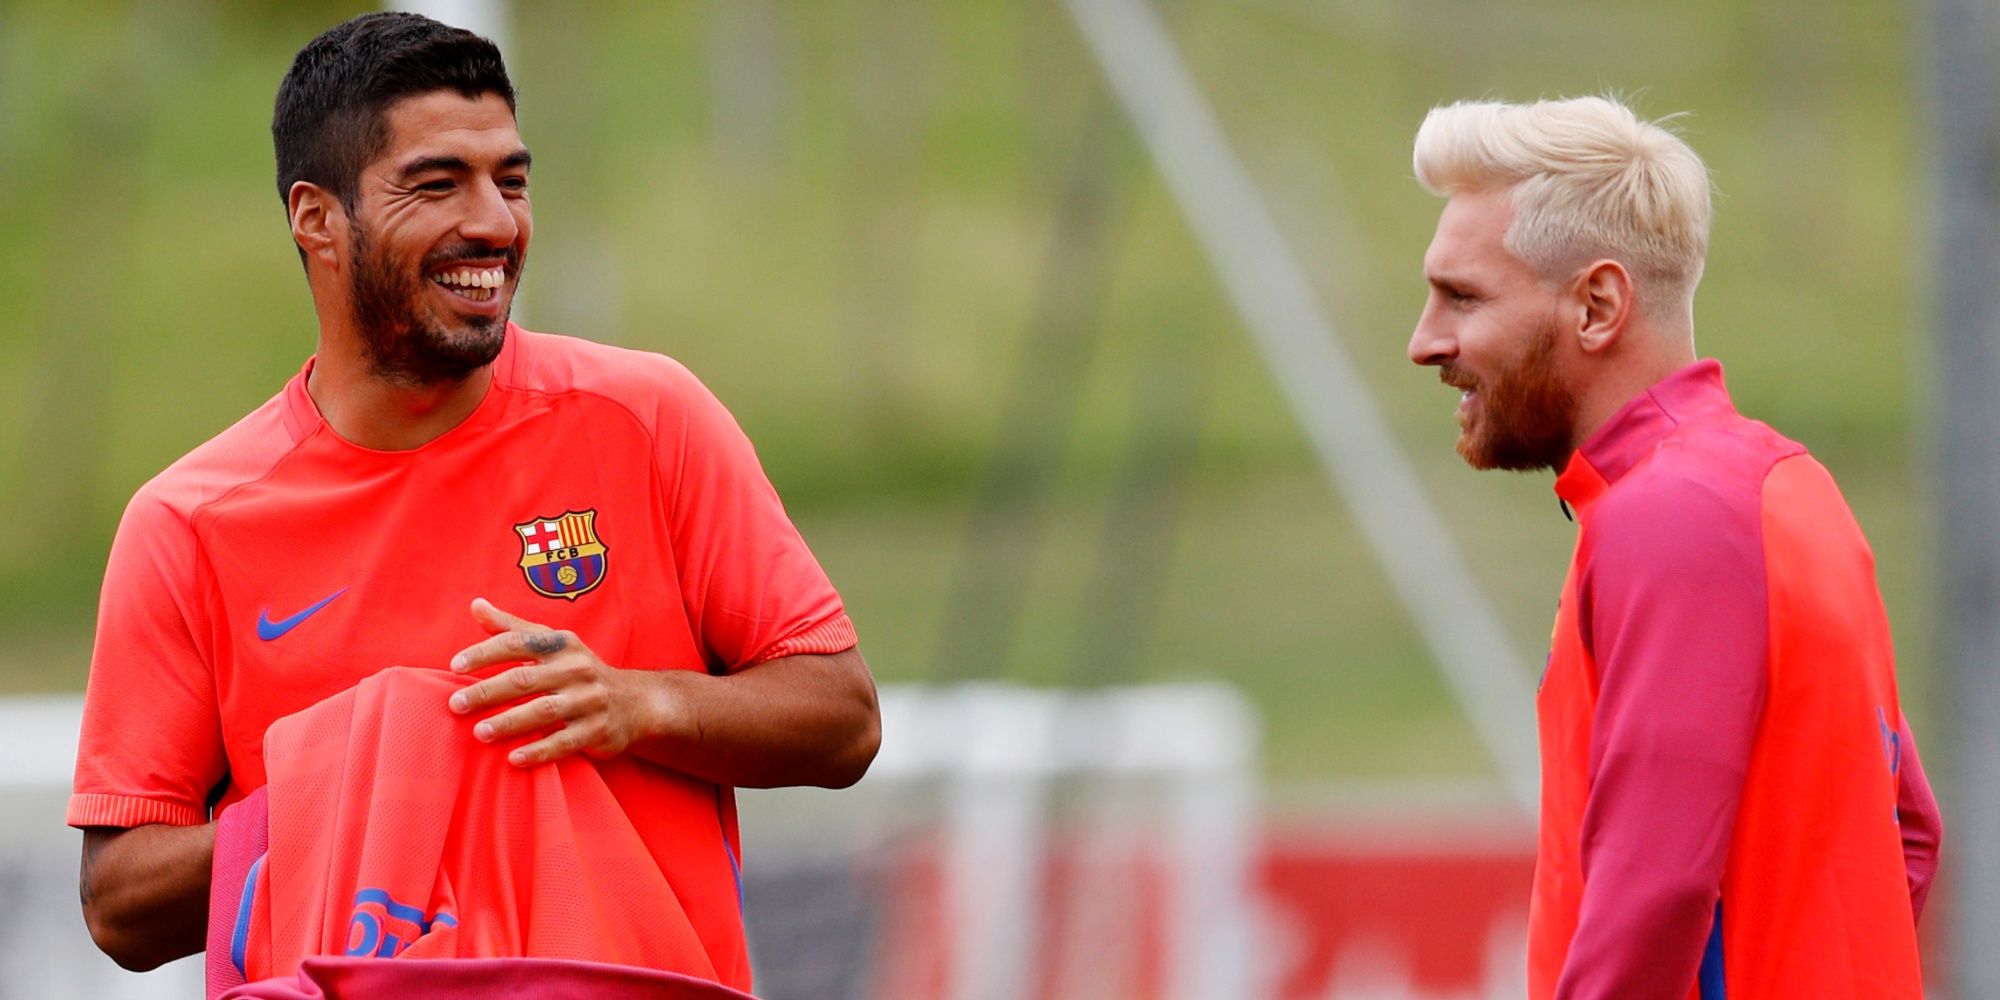 Luis Suarez and Lionel Messi in training